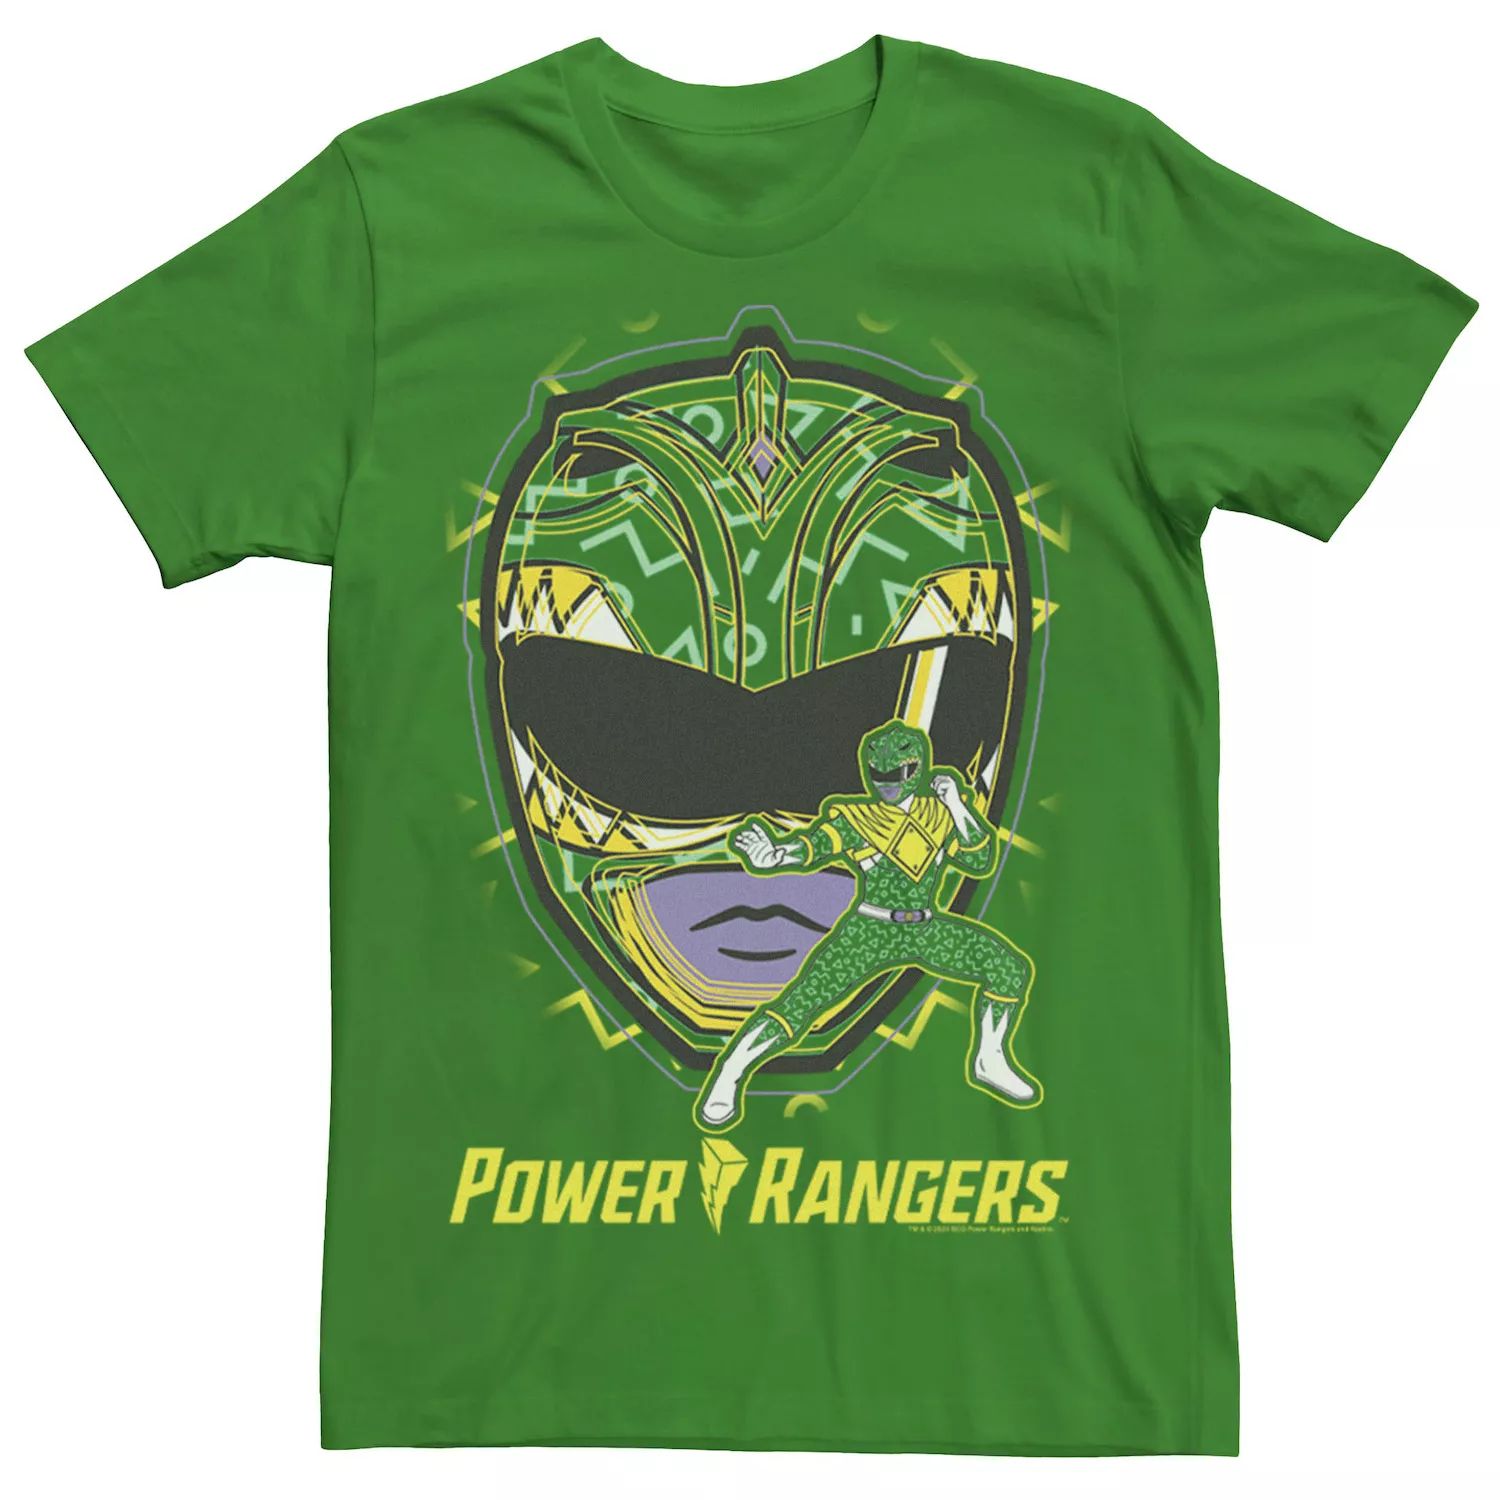 Мужская зеленая футболка Power Rangers Hero Ranger Licensed Character